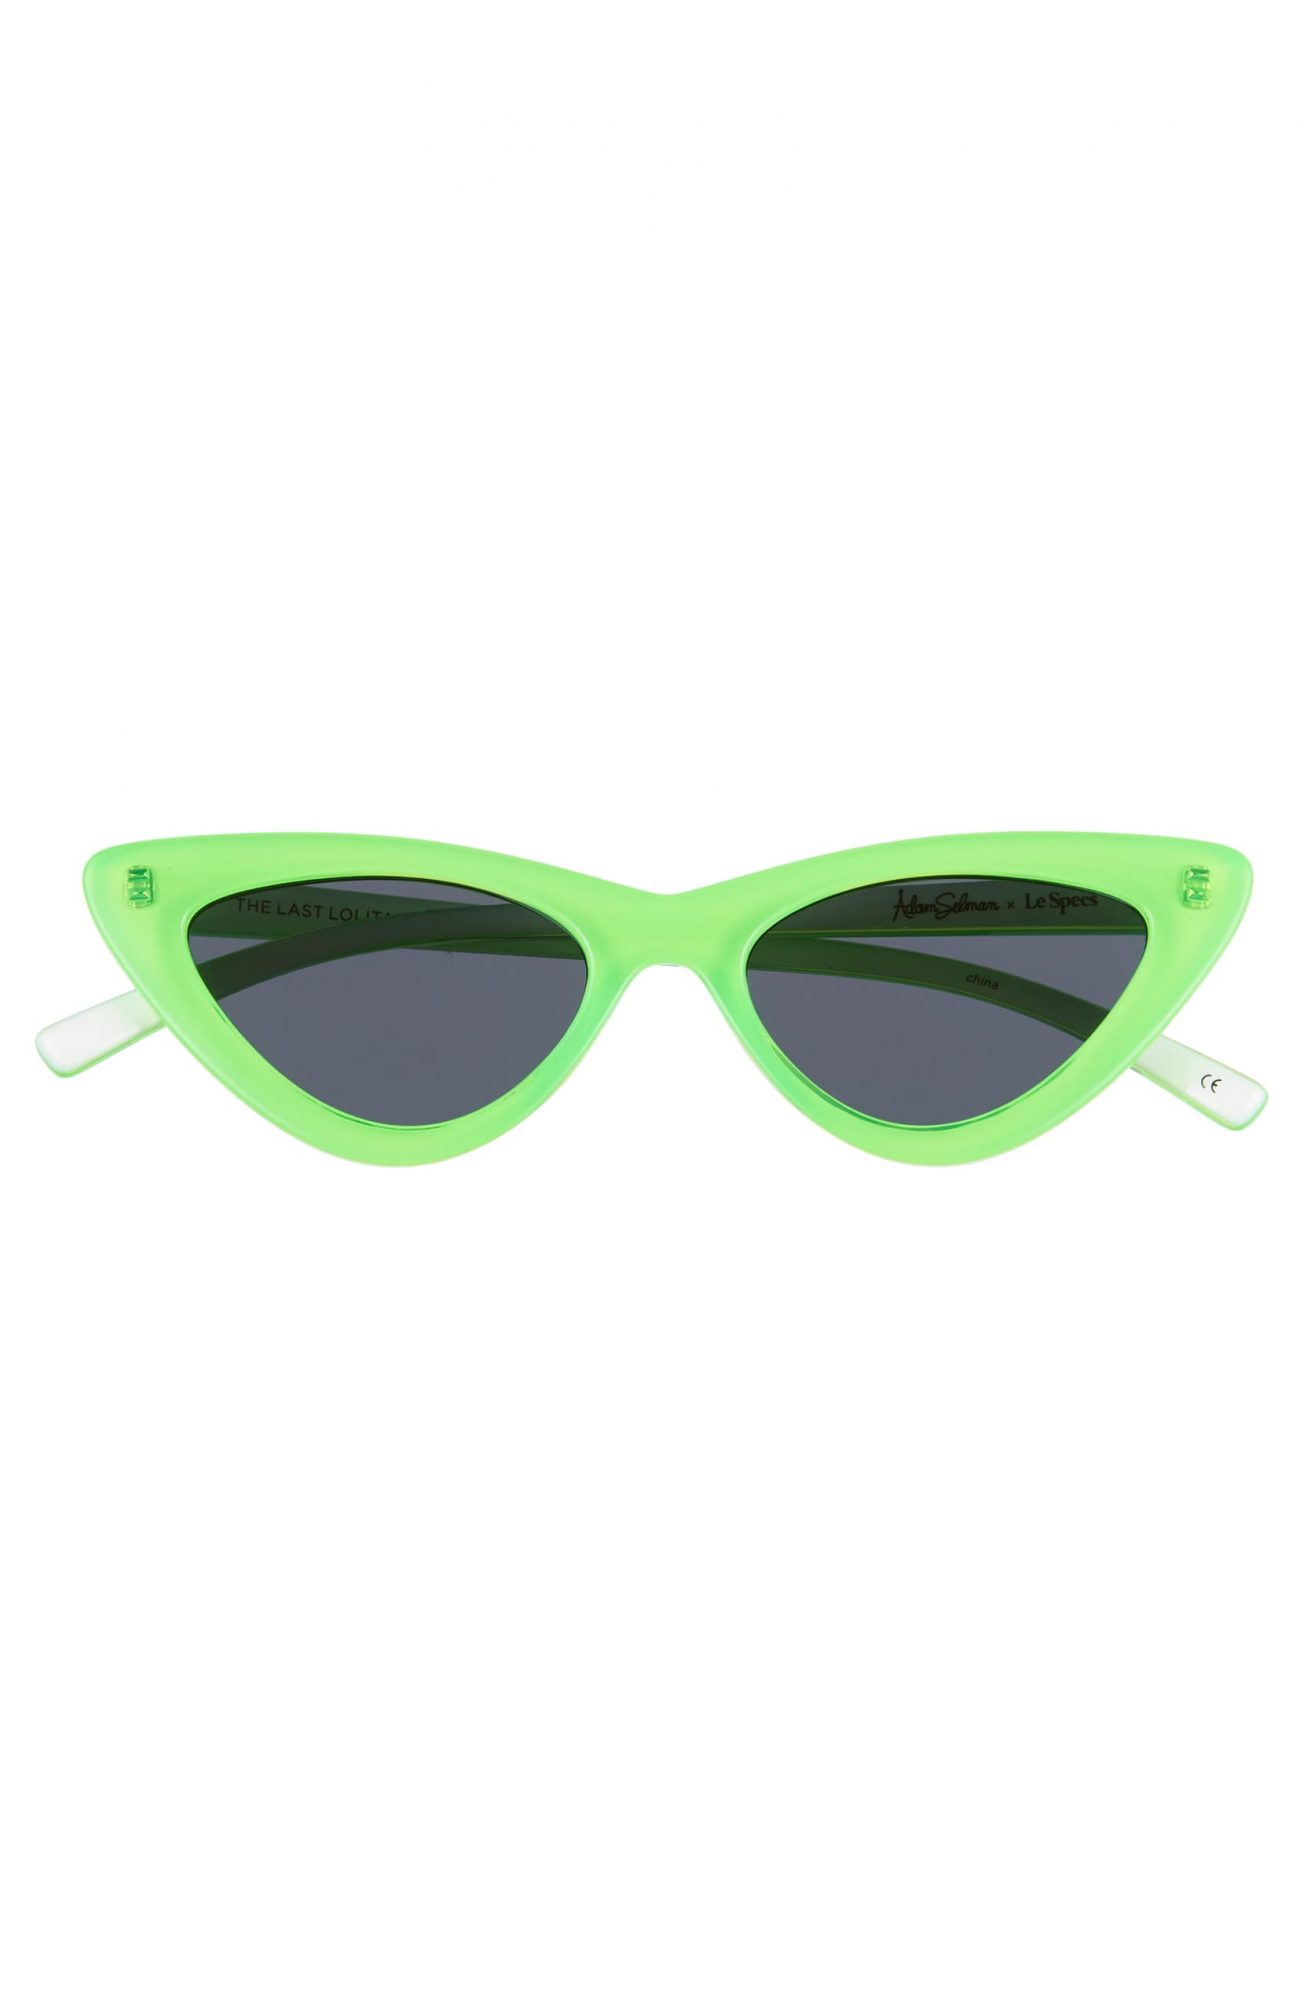 Adam Selman cat-eye sunglasses